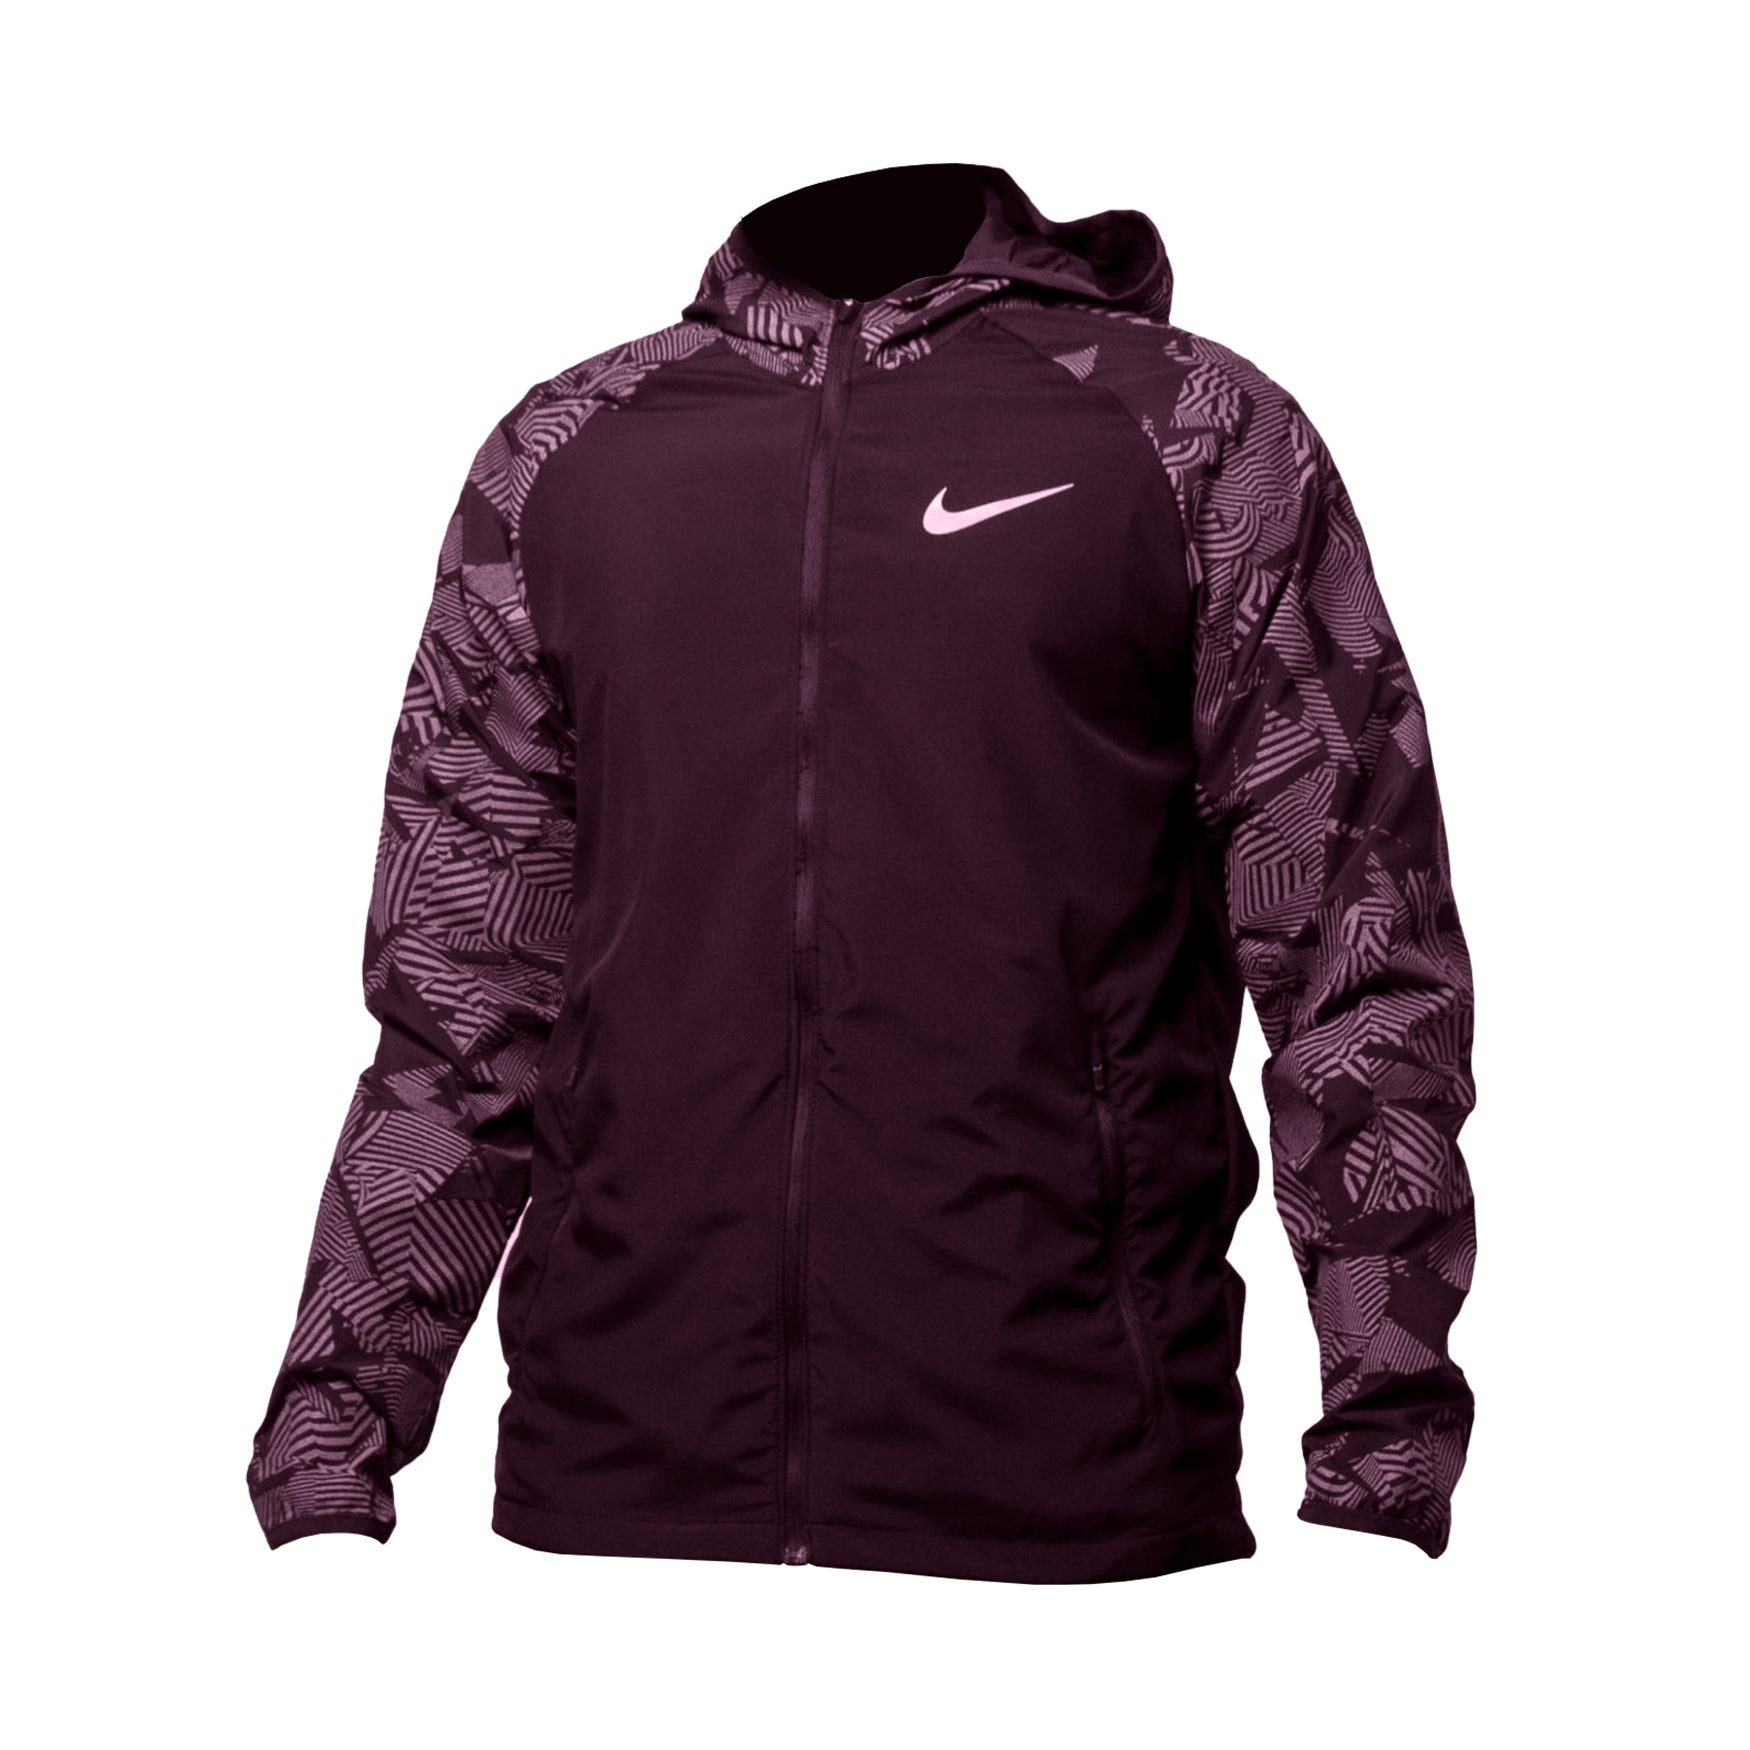 Nike Flash Reflective Jacket (Burgundy)